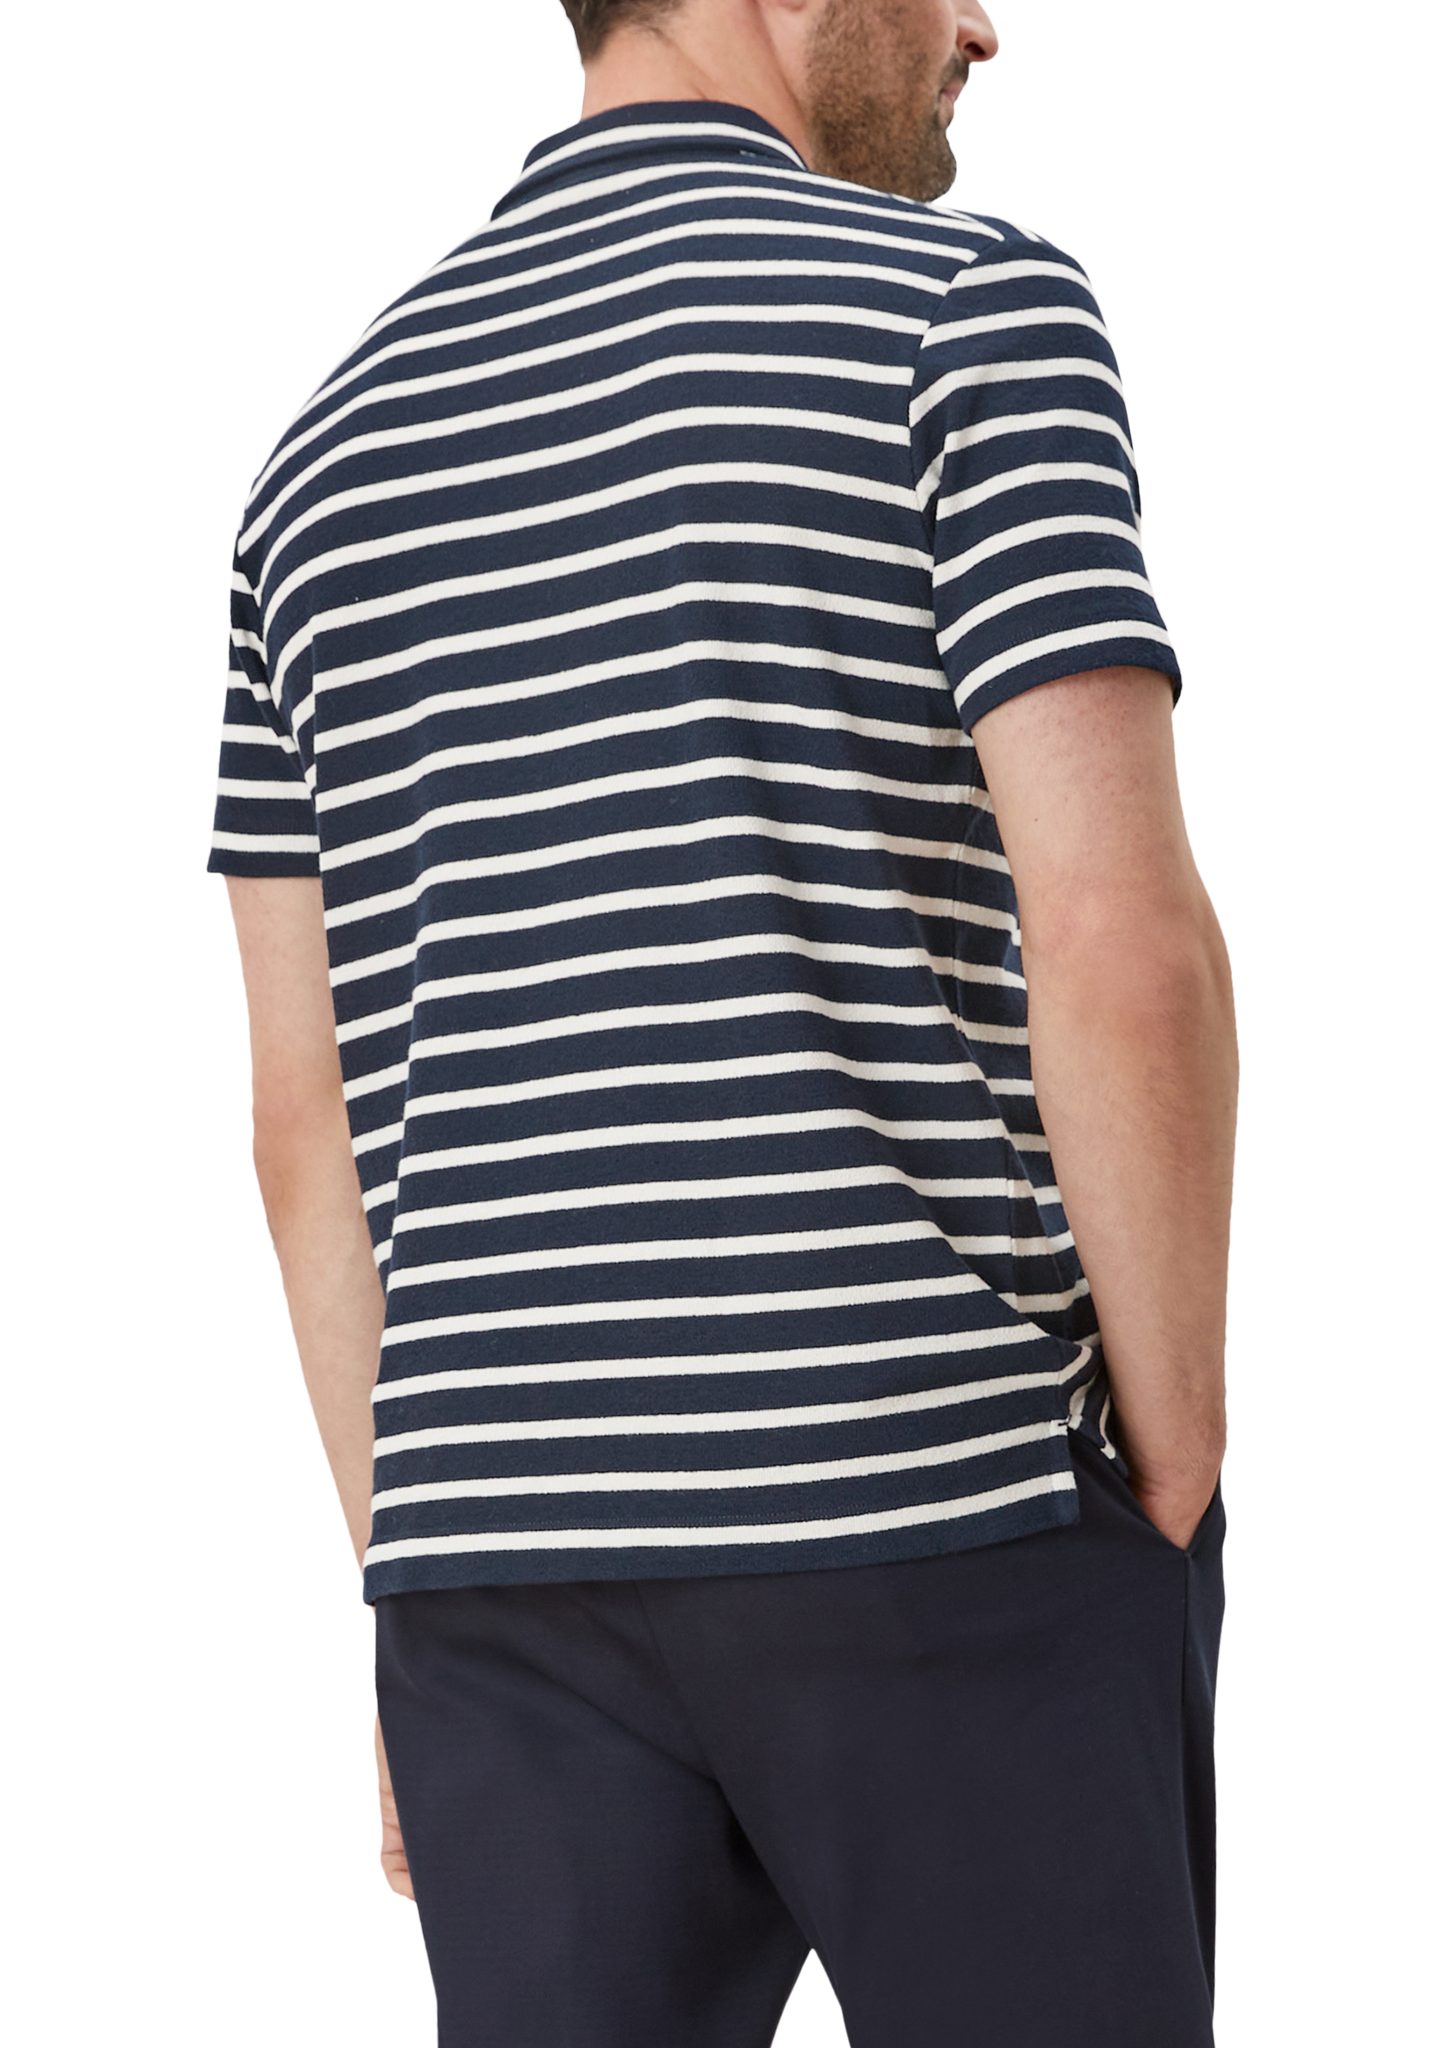 s.Oliver Kurzarmshirt Poloshirt im Streifendesign navy stripes